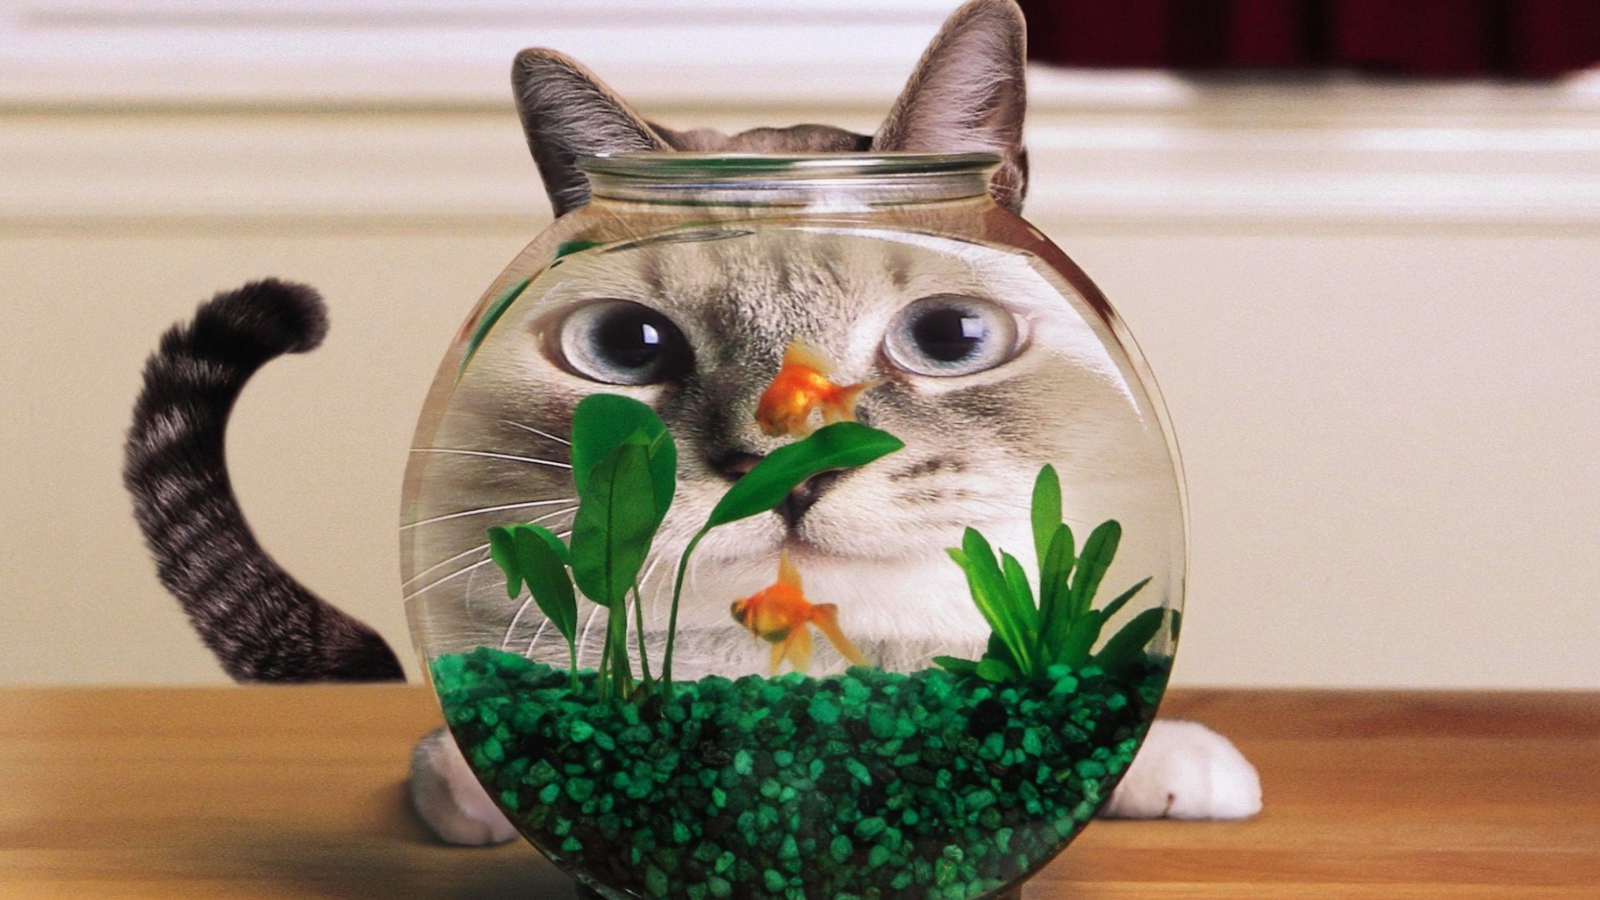 Aquarium Cat Funny Face Distortion wallpaper 1600x900